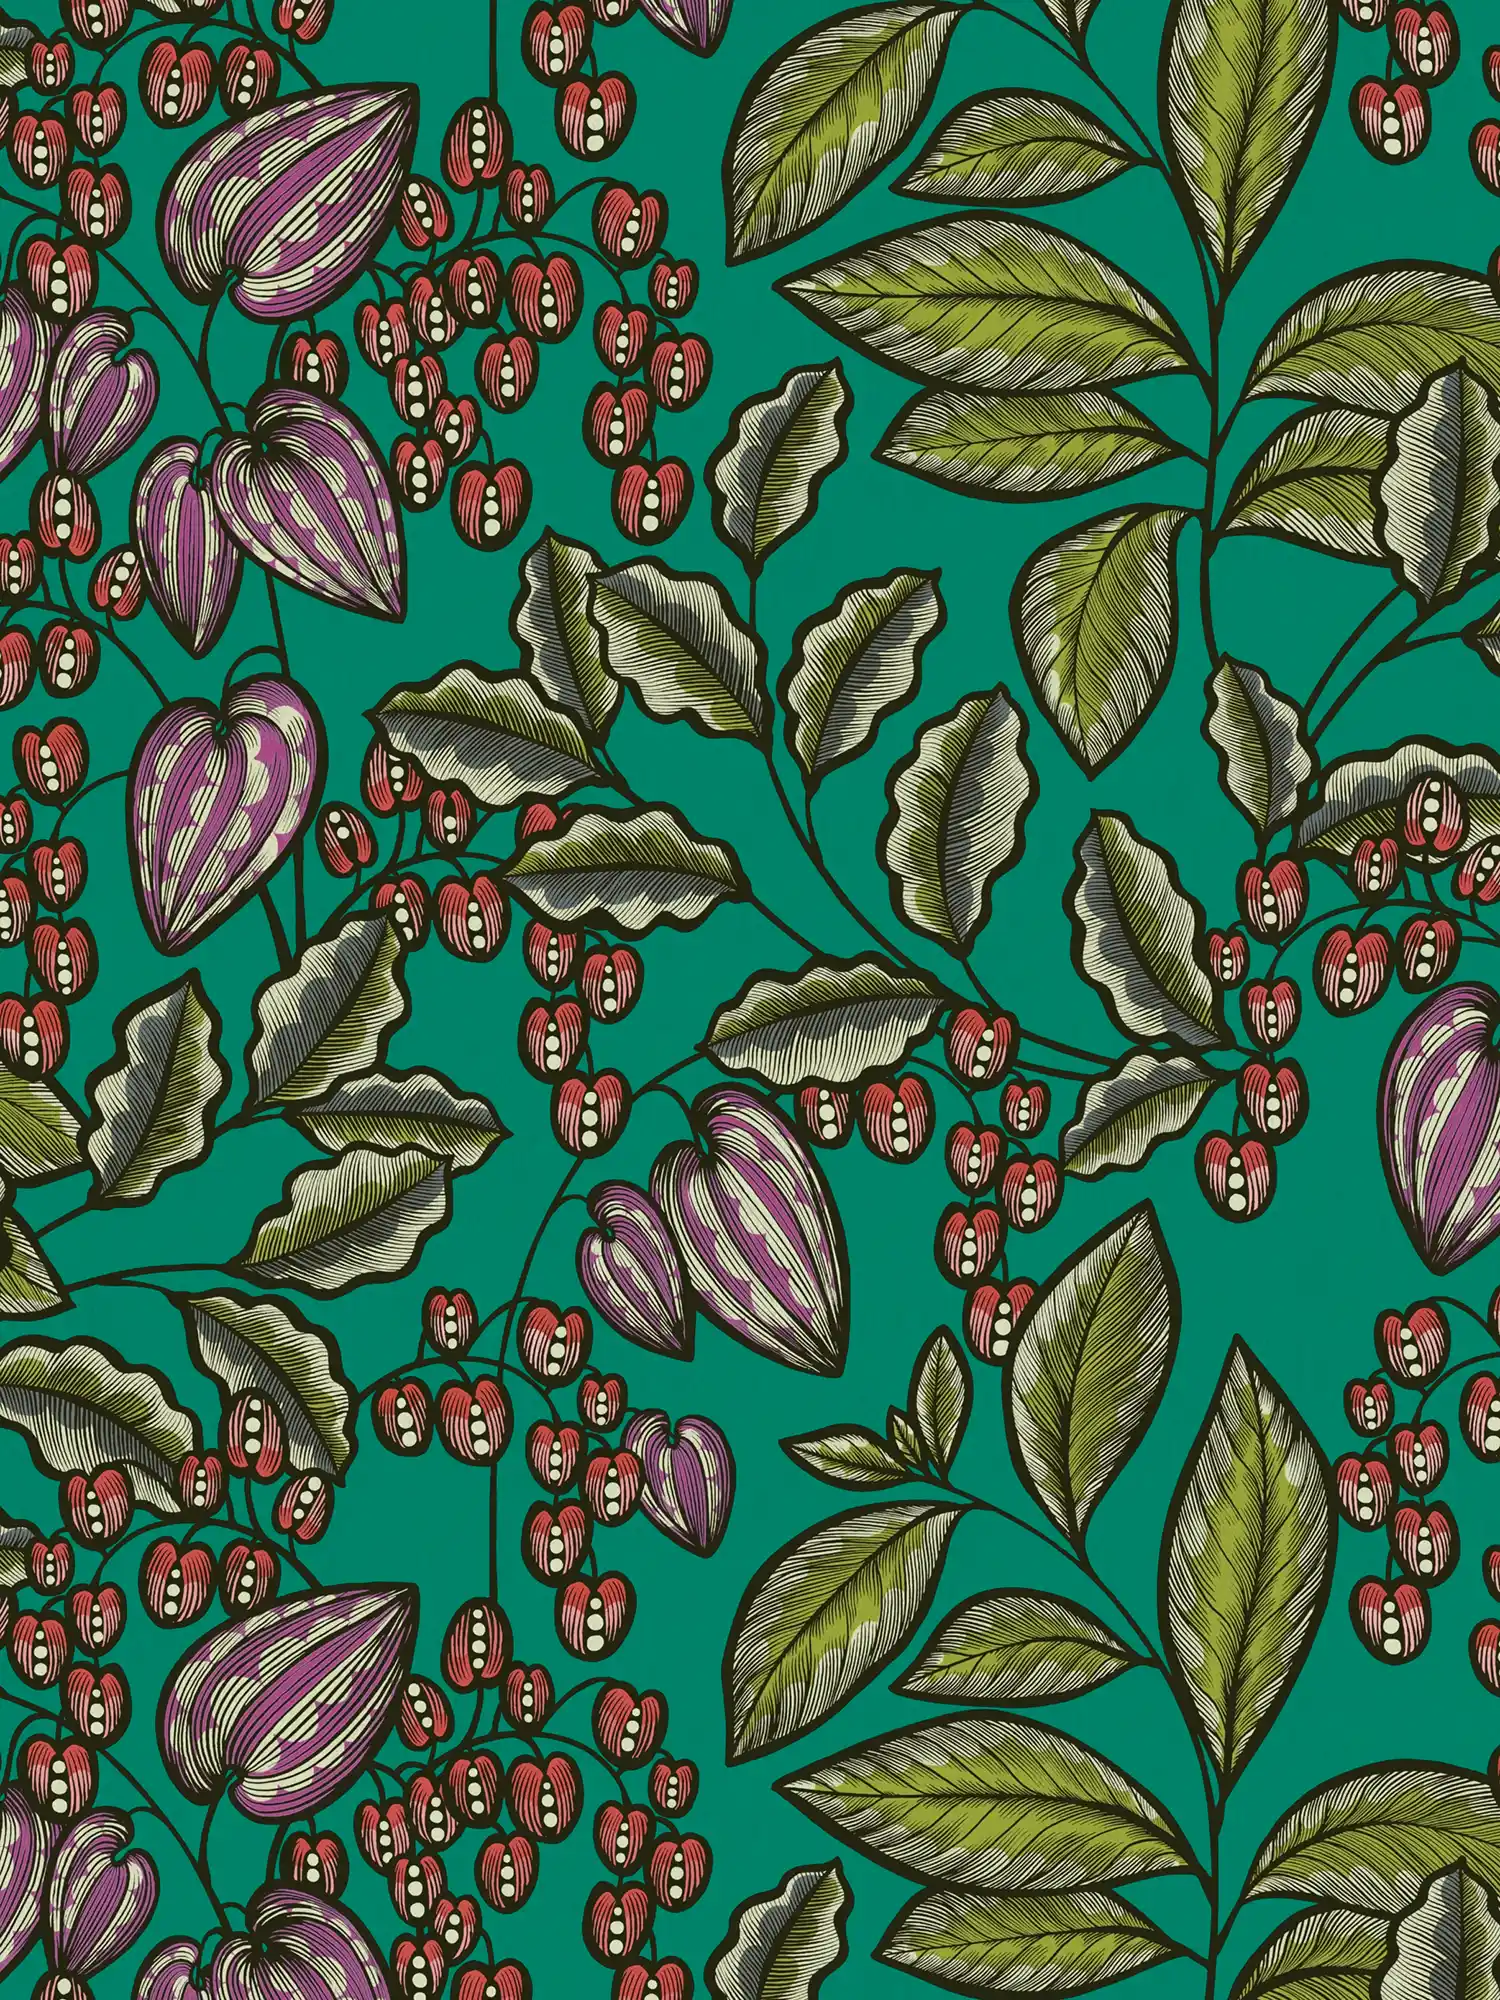 Behang groen met bladeren motief in Scandi design - groen, rood, paars
